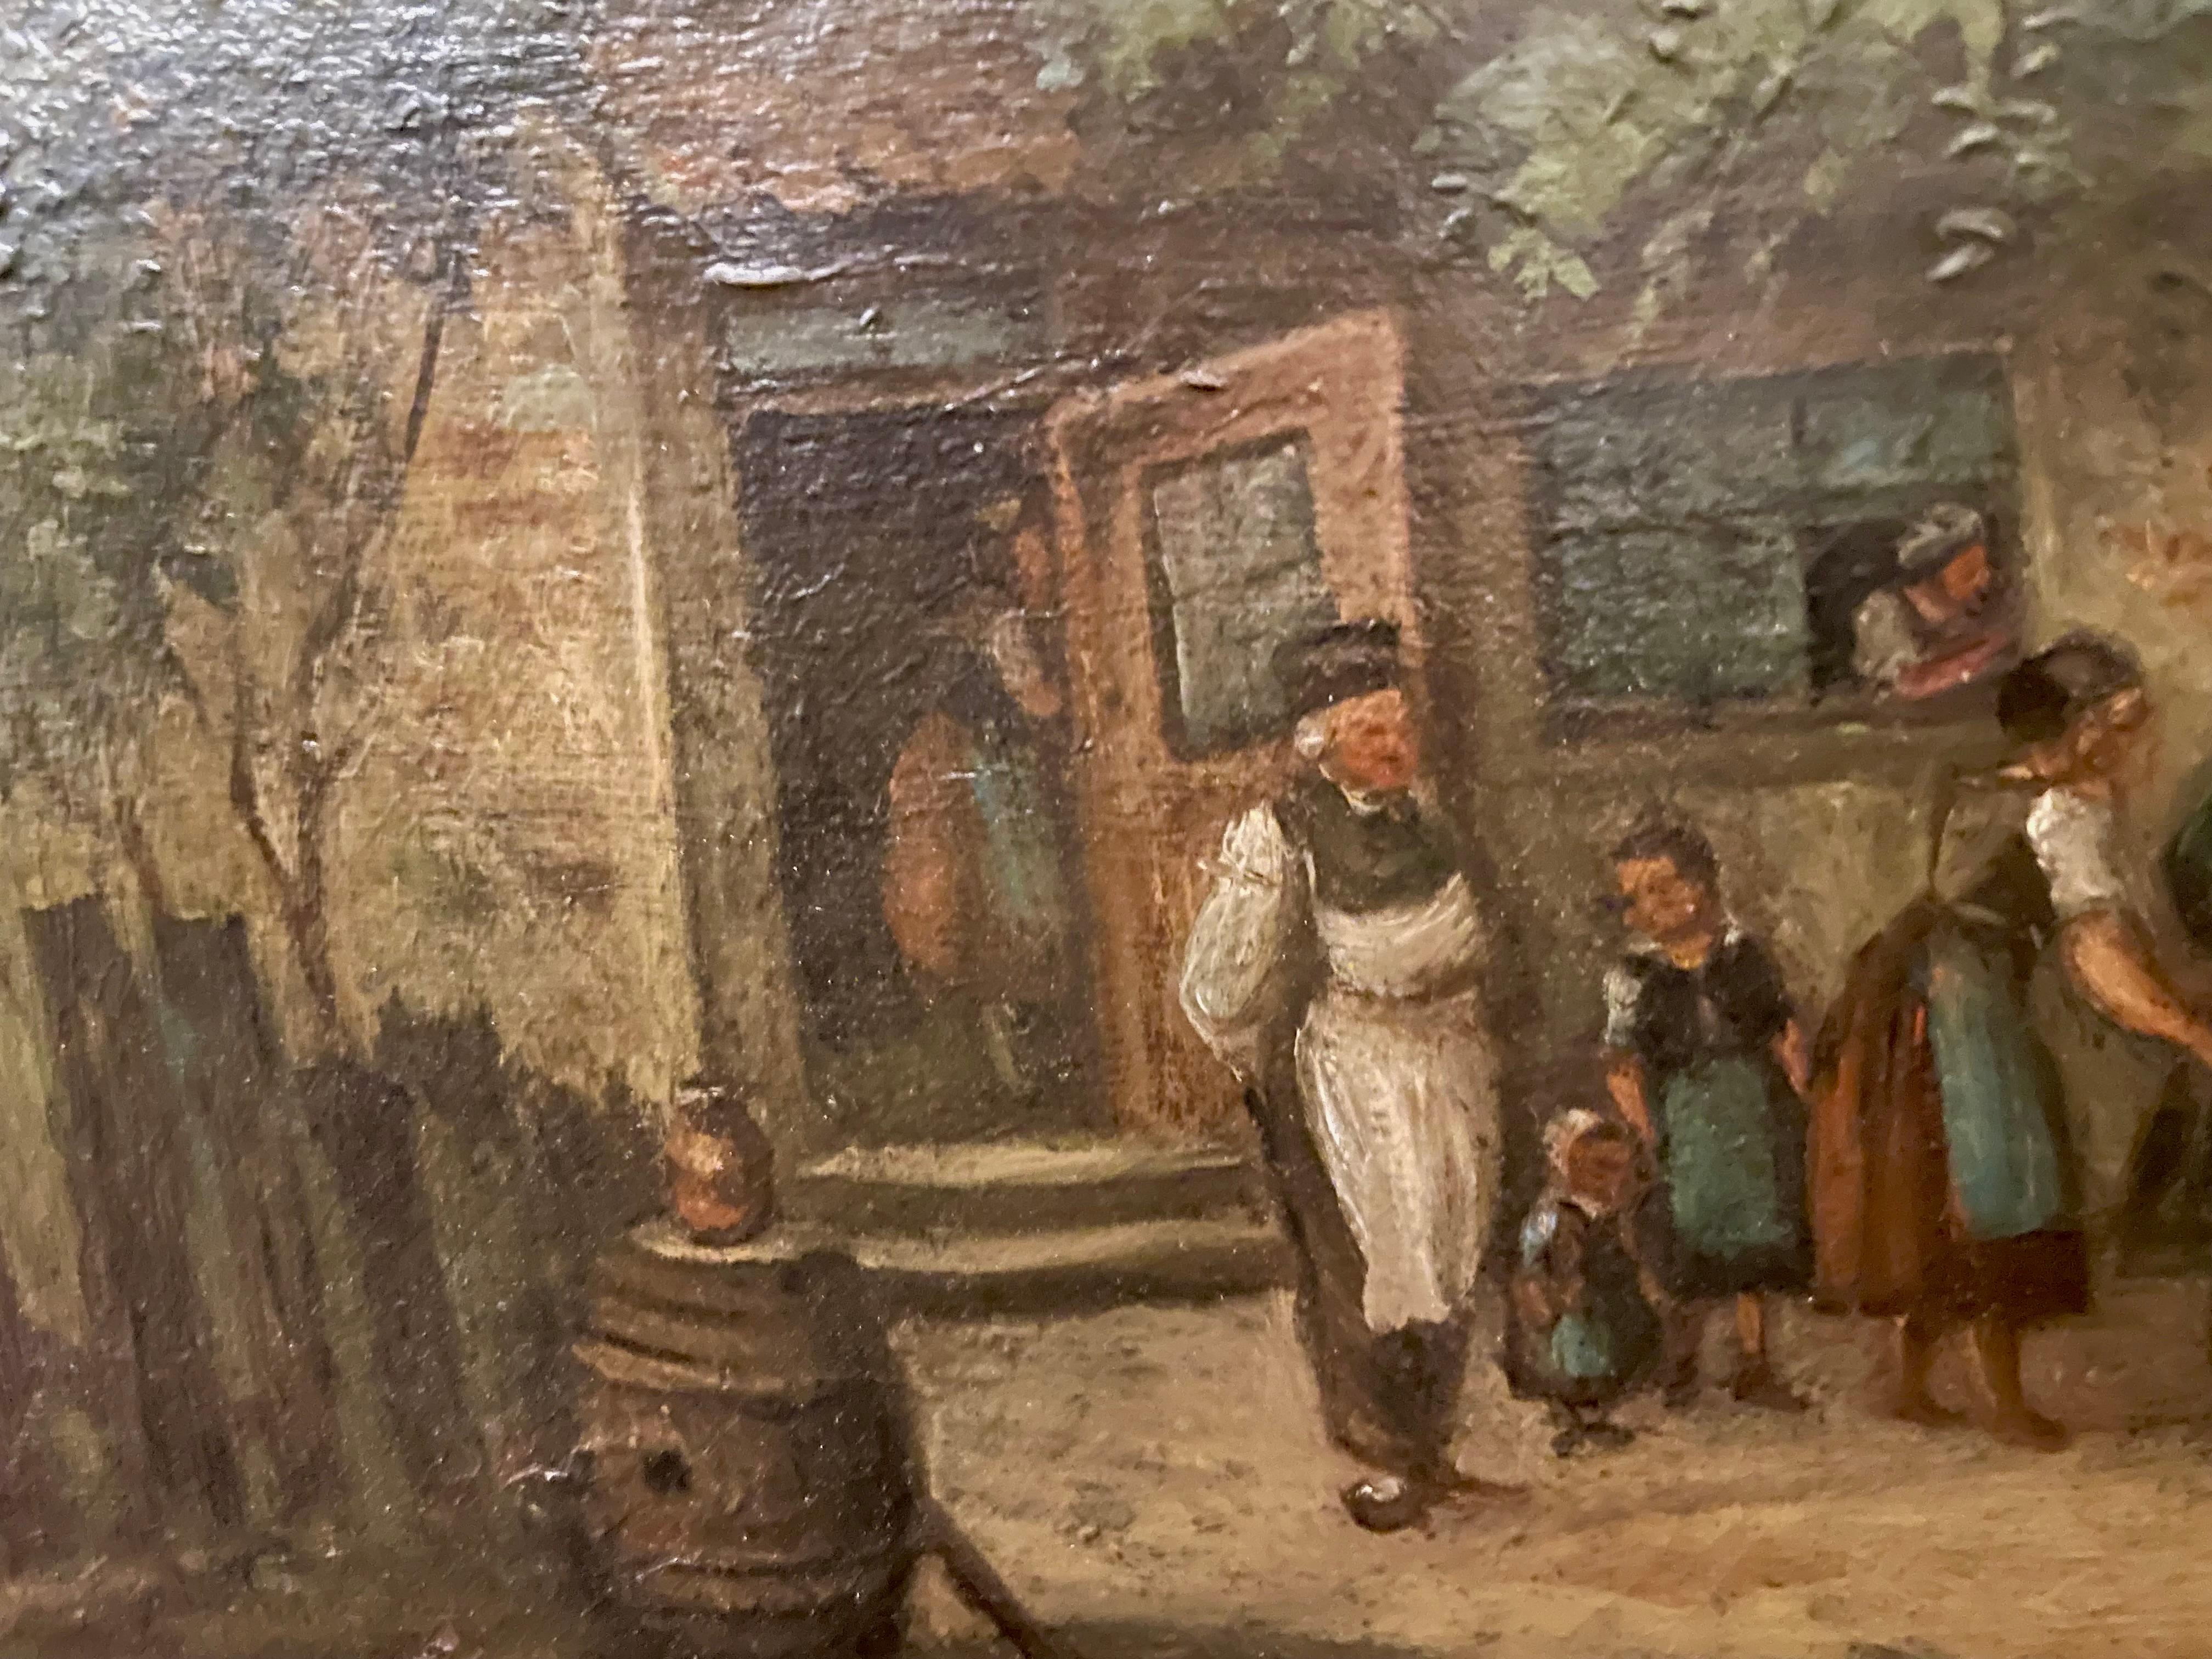 Belle peinture à l'huile du XIXe siècle représentant un village autrichien/germanique animé avec un cheval, un cavalier et divers personnages à l'extérieur d'une auberge, attribuée à Arthur Georg Ramberg (1819-1879), bien connu pour ses peintures